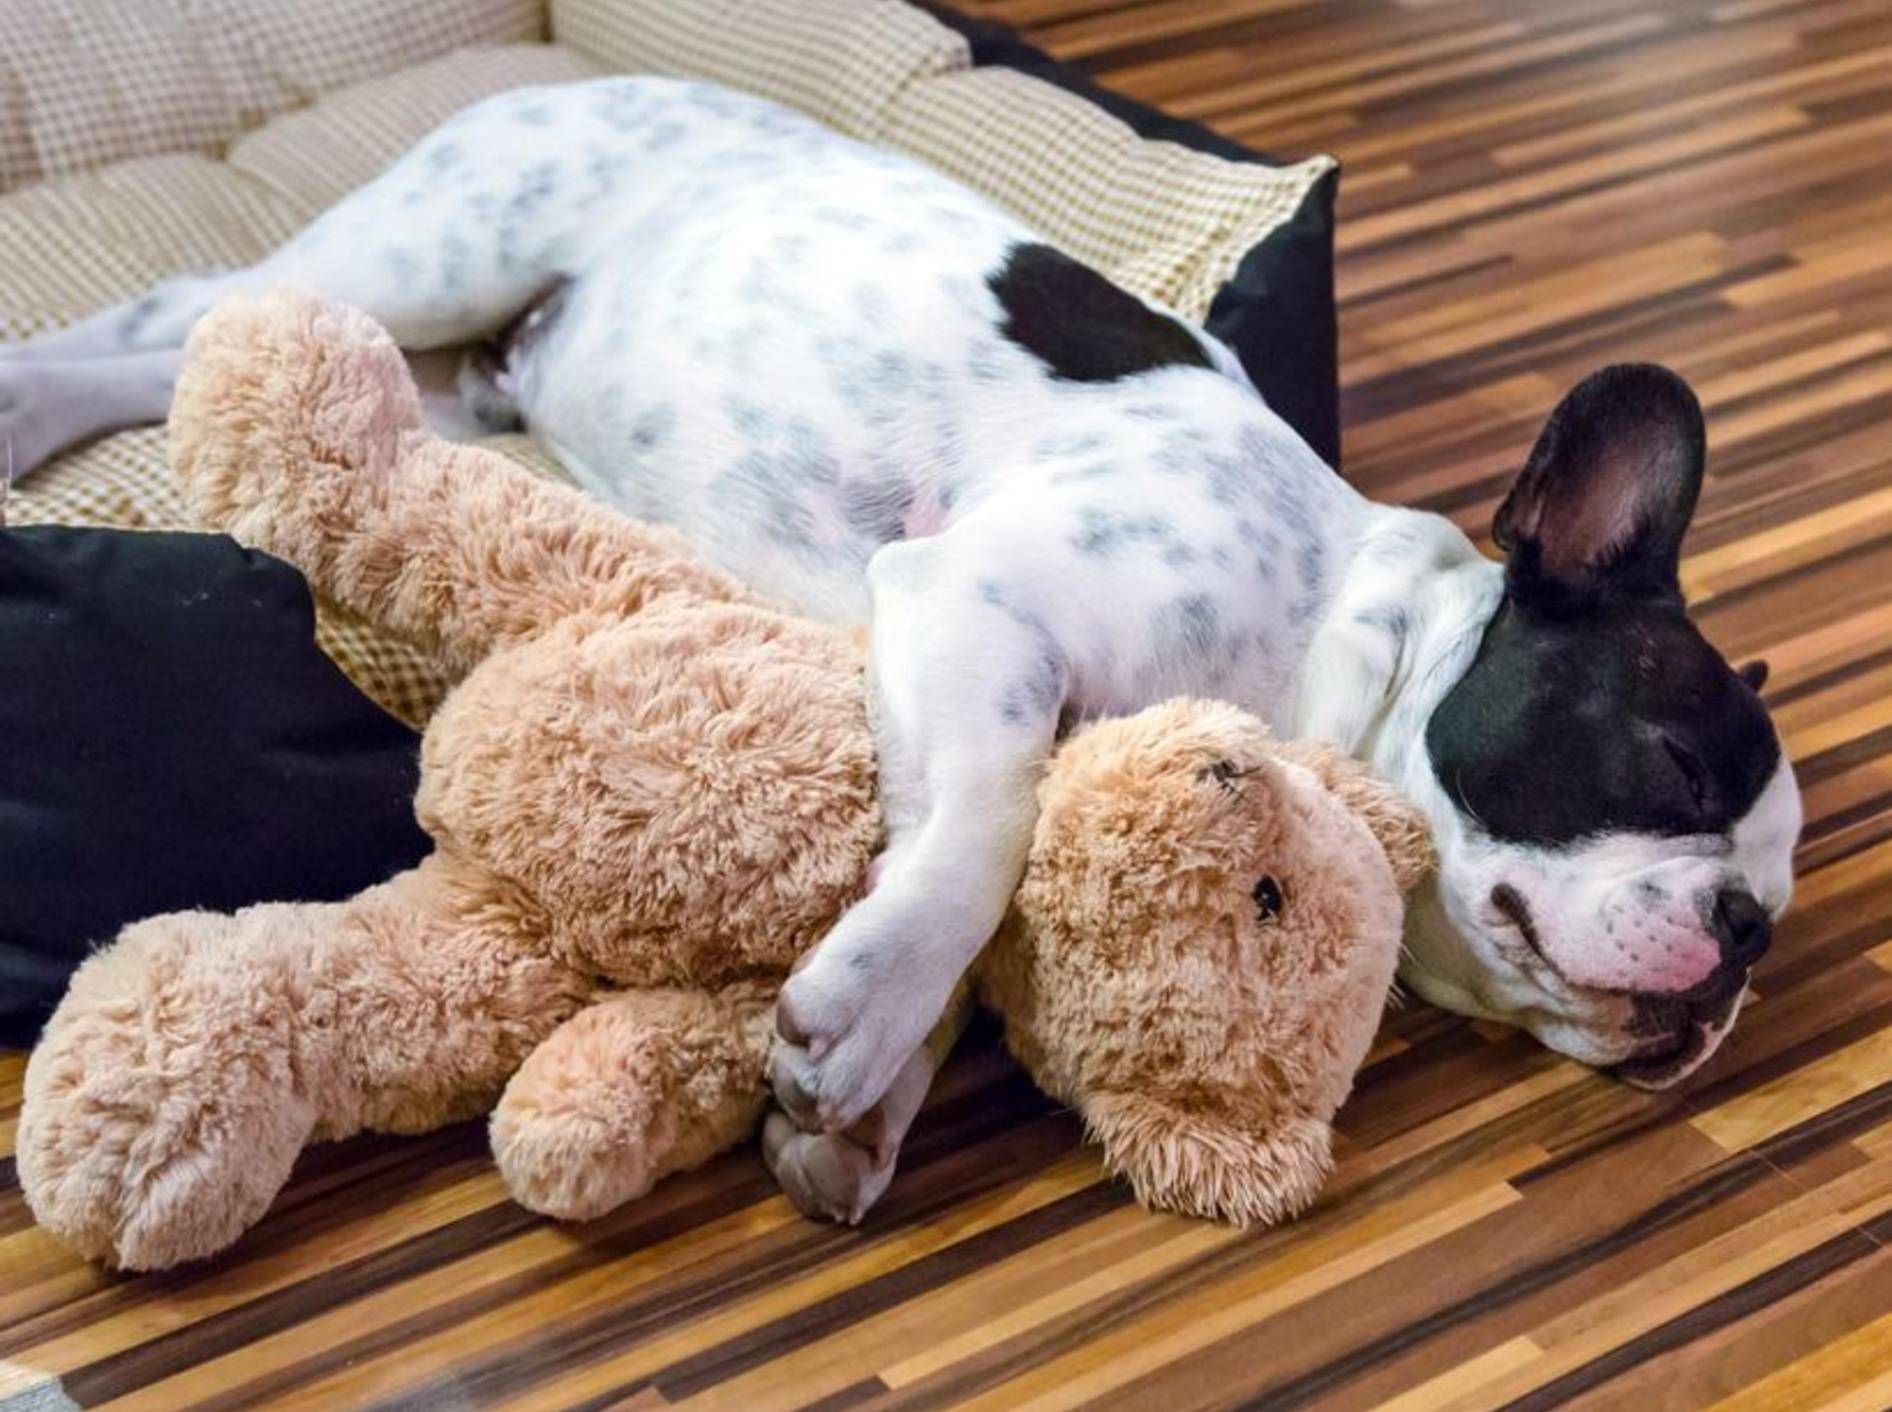 Französische Bulldogge kuschelt mit Teddybär - Bild: Shutterstock / Patryk Kosmider